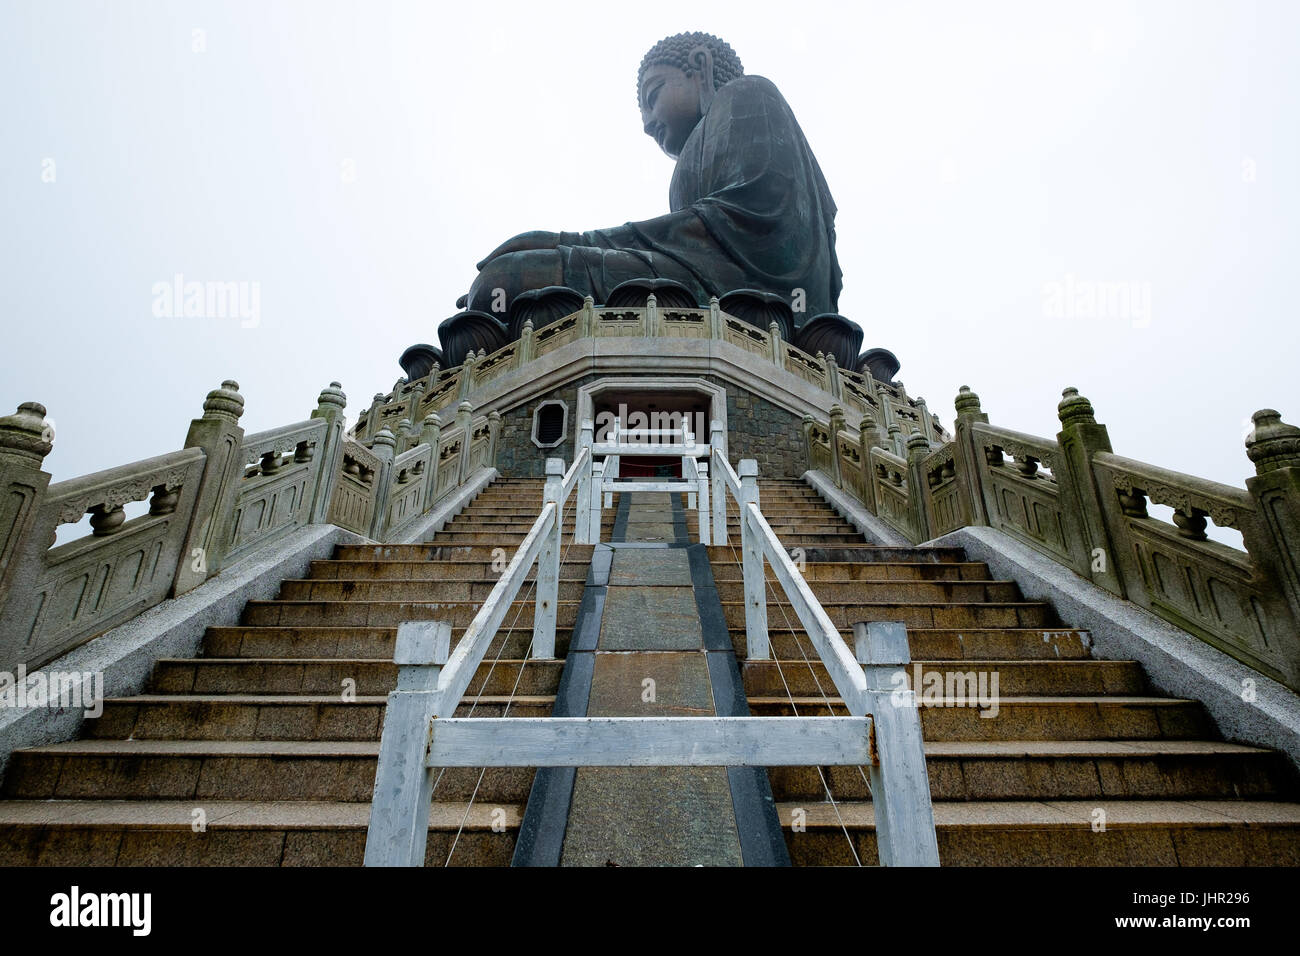 Big Bouddha dans l'île de Lantau Banque D'Images